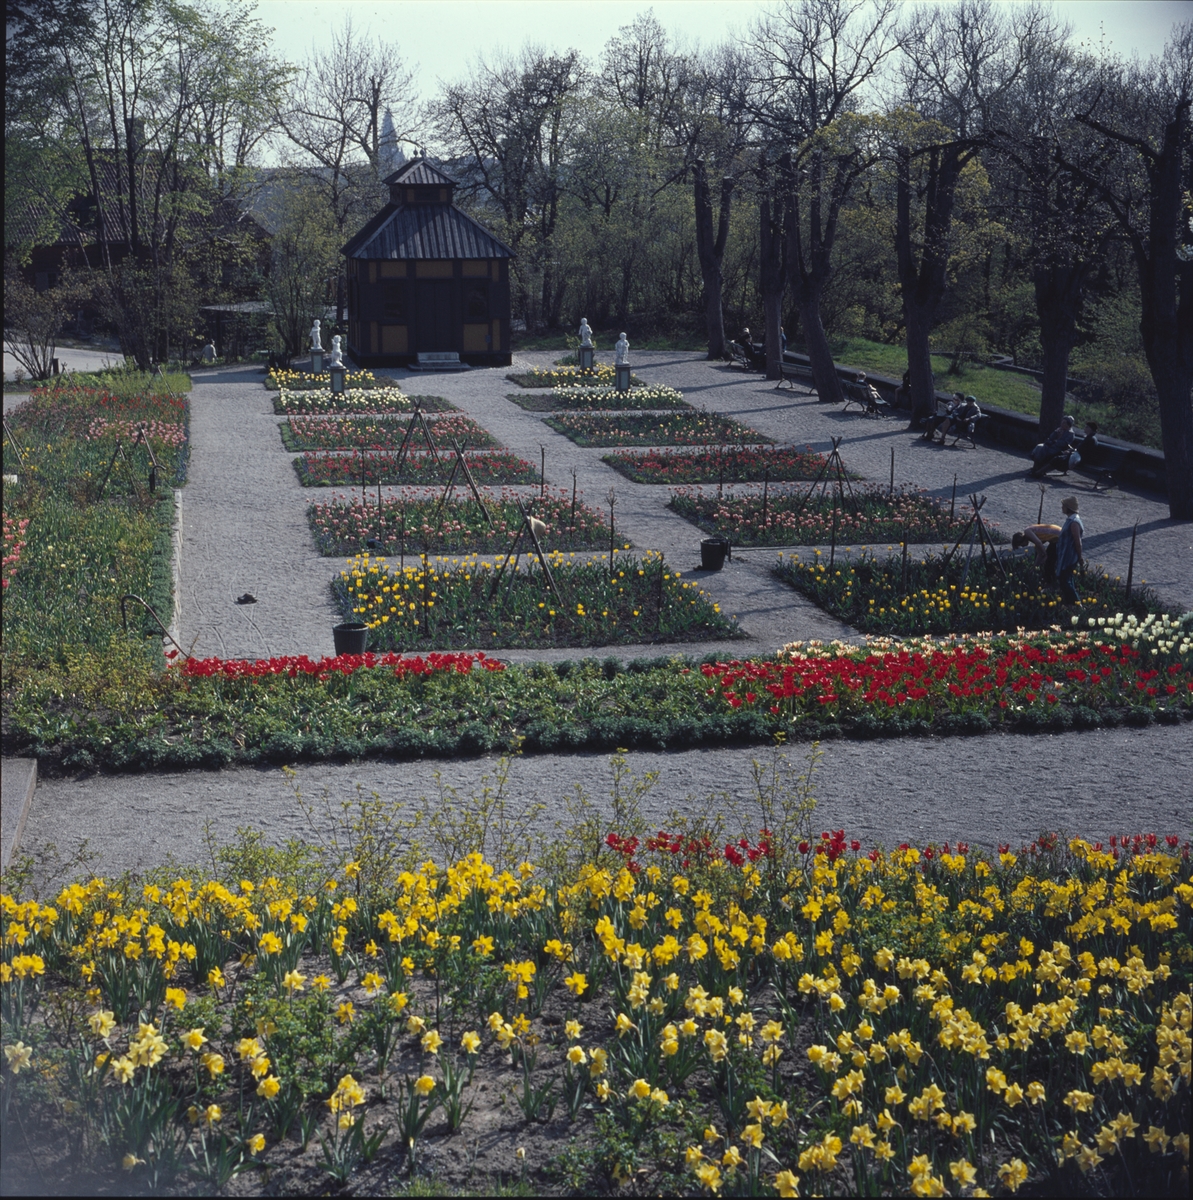 Blommande vårblommor i Rosenträdgårdens välskötta rabatter. I bakgrunden begrundar Swedenborgs lusthus fyra figurer som dansar i den färgrika blomsterprakten.